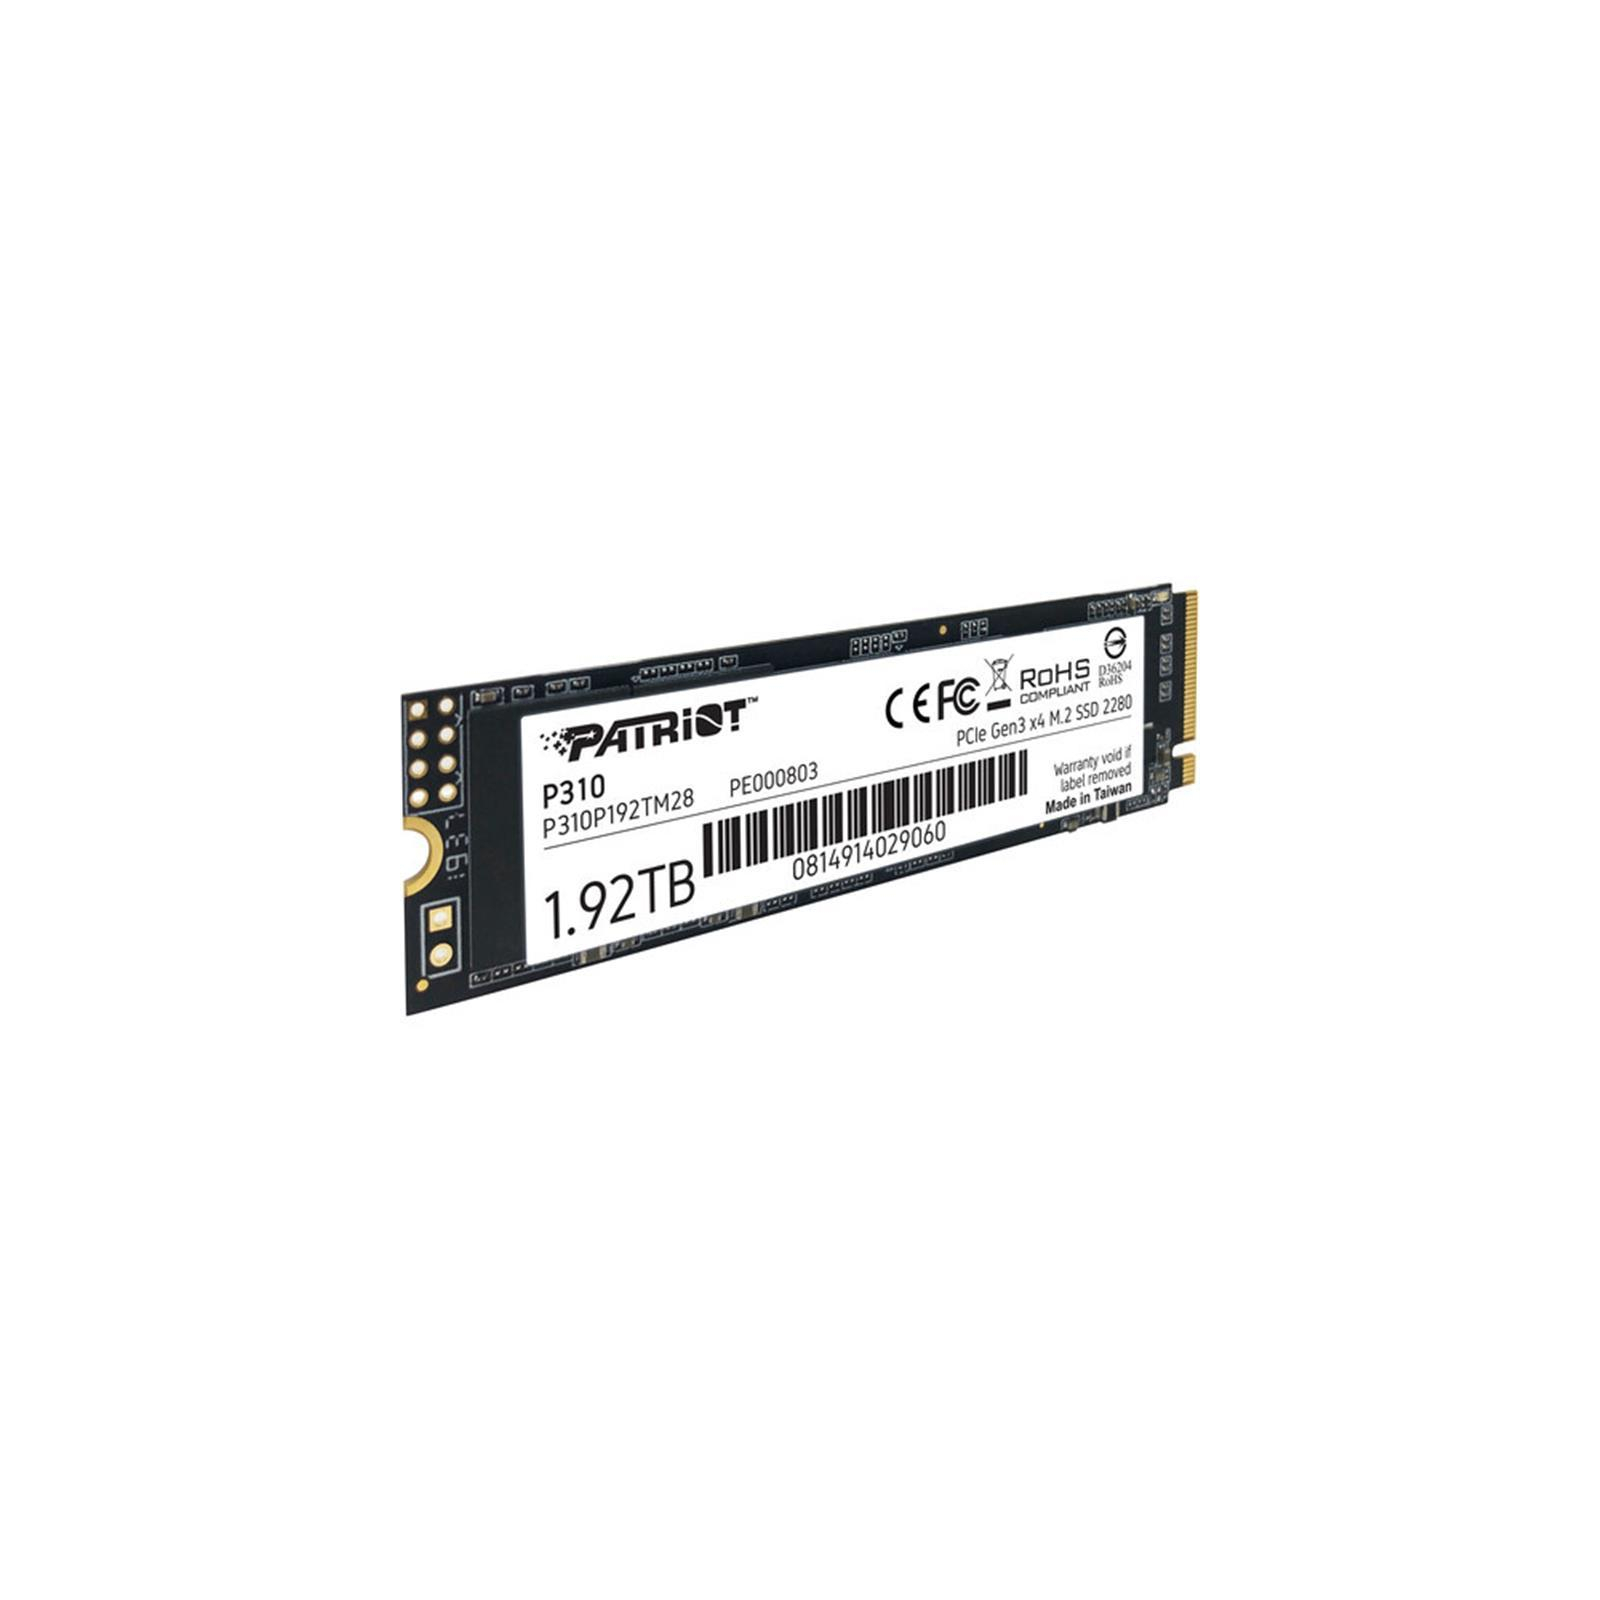 Накопитель SSD M.2 2280 960GB Patriot (P310P960GM28) изображение 2